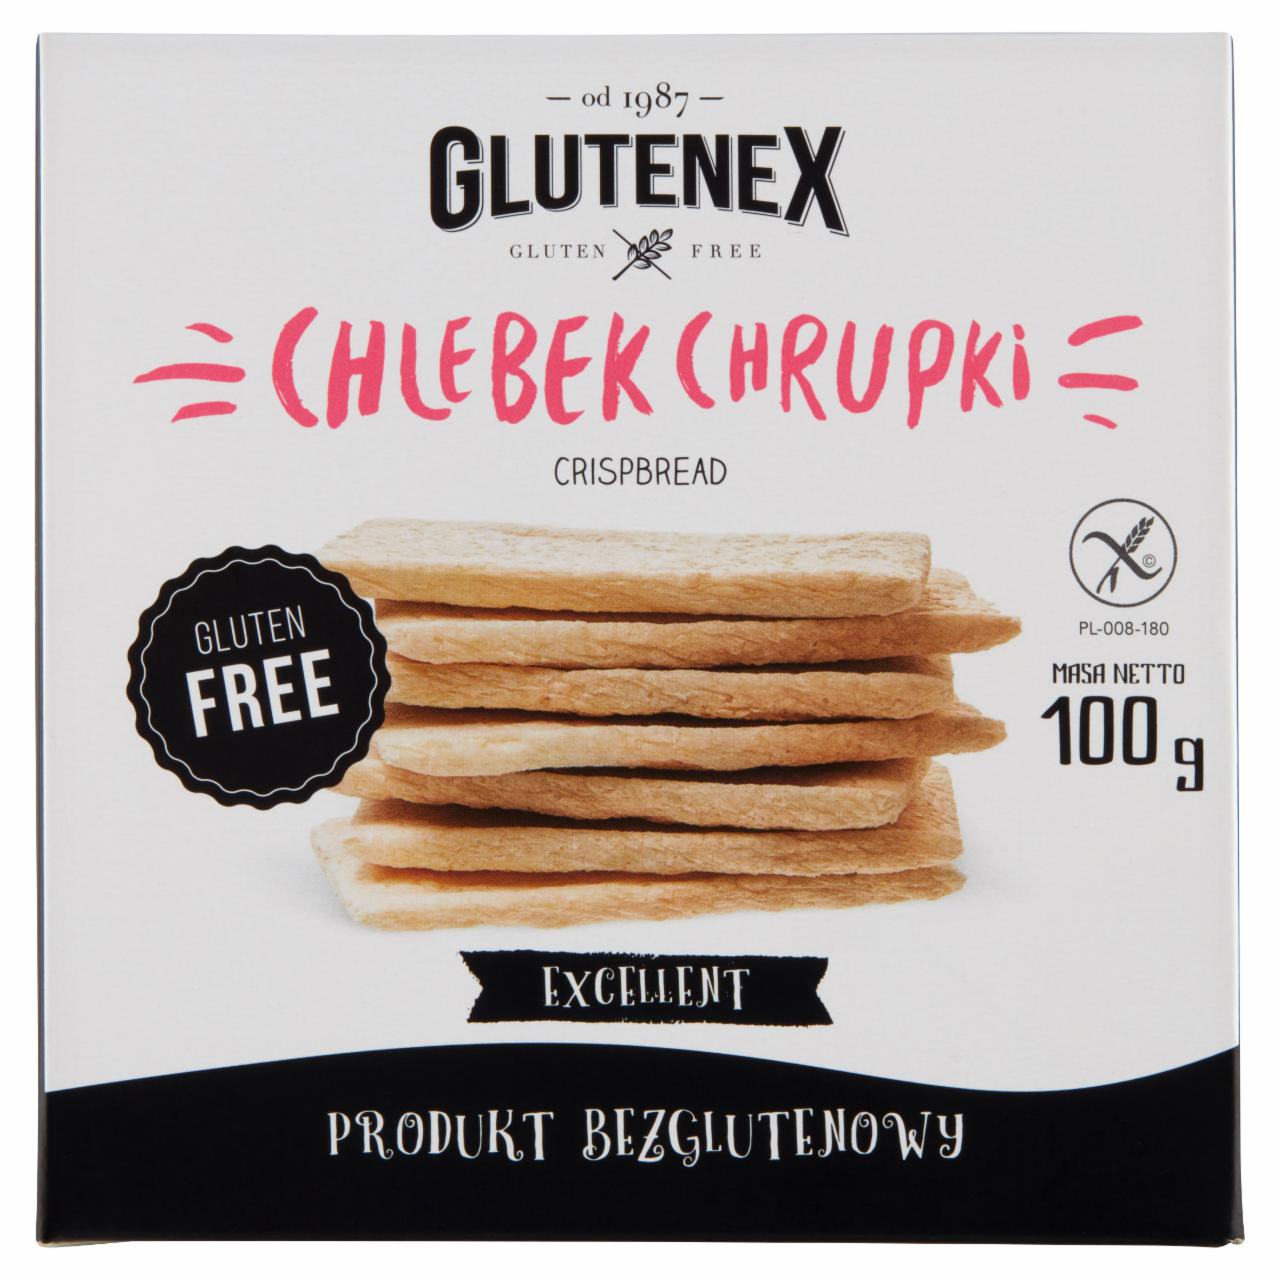 Zdjęcia - Glutenex Chlebek chrupki 100 g